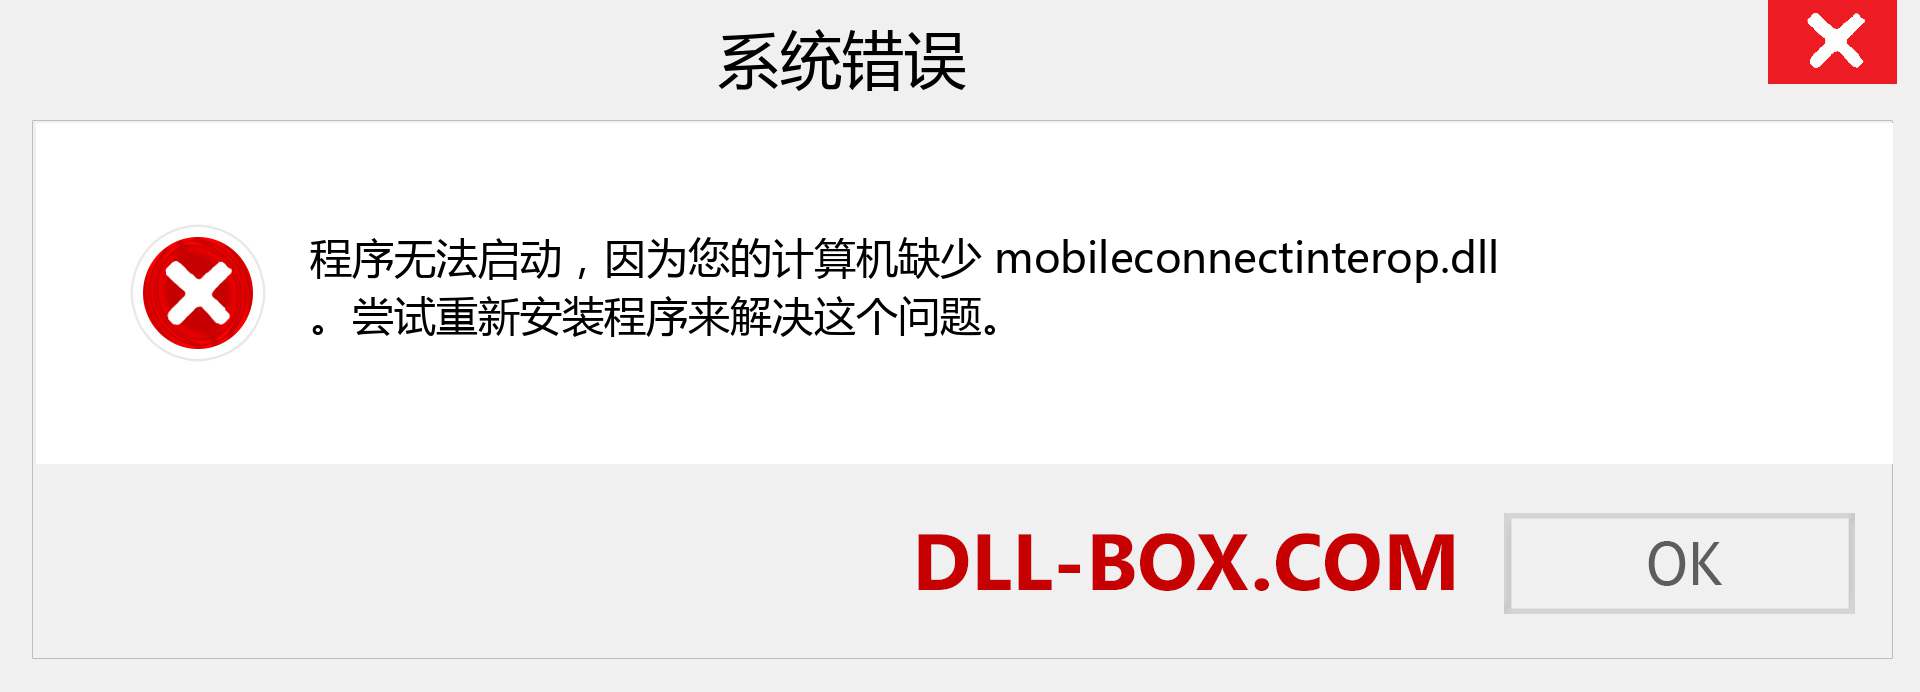 mobileconnectinterop.dll 文件丢失？。 适用于 Windows 7、8、10 的下载 - 修复 Windows、照片、图像上的 mobileconnectinterop dll 丢失错误